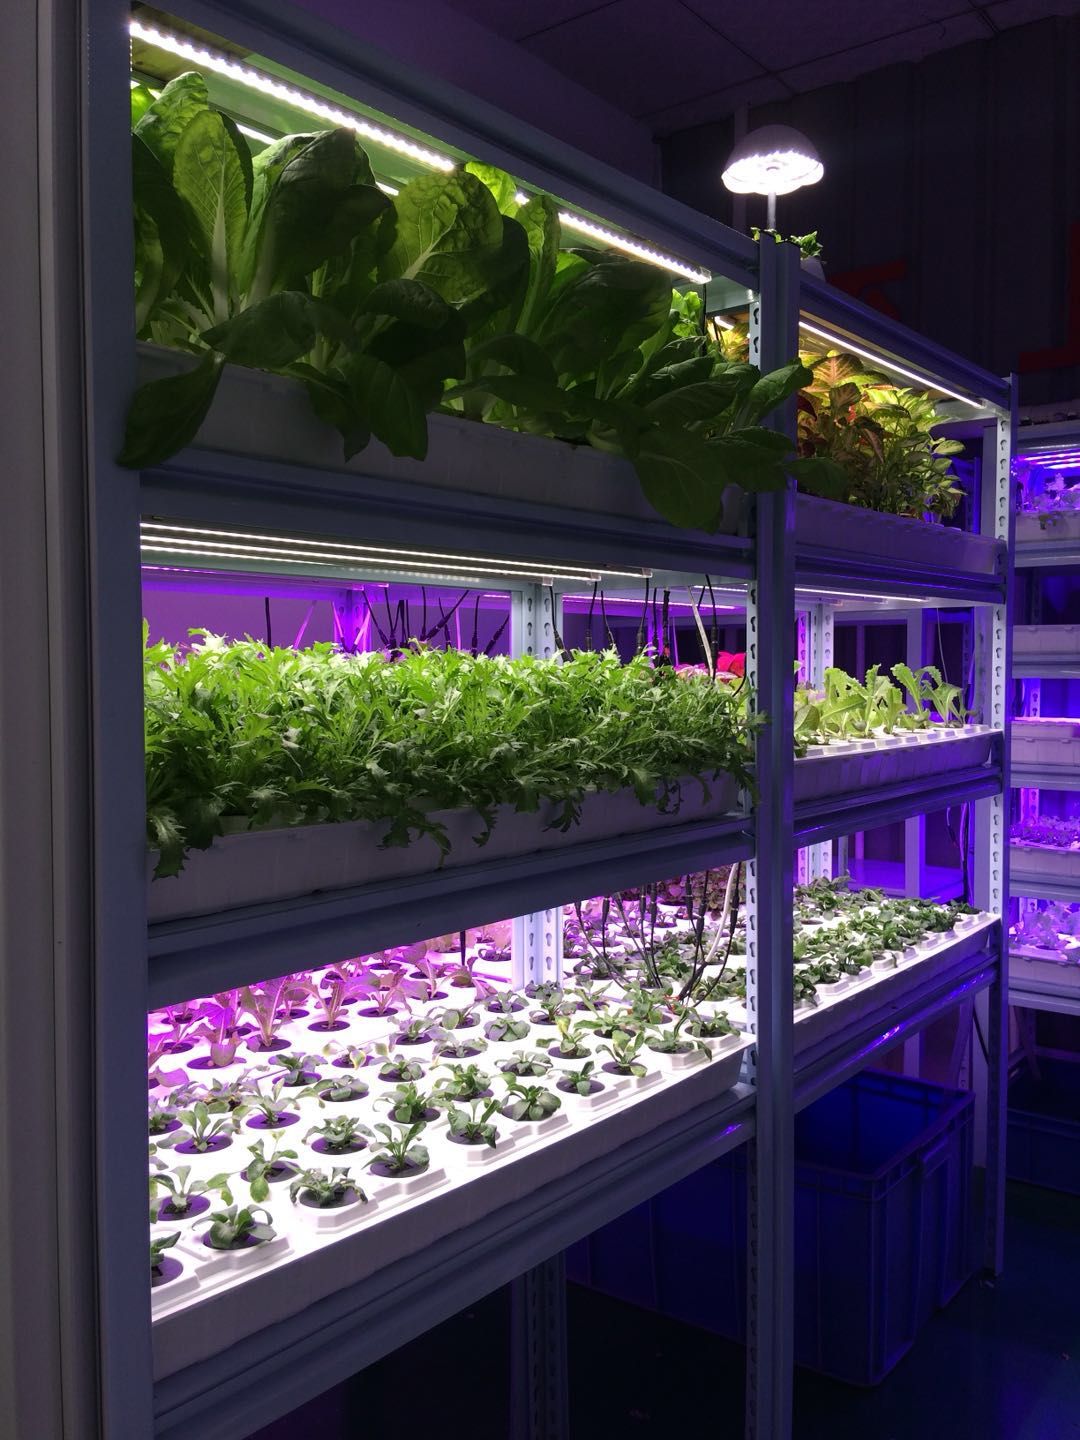 LED光源植物灯为温室植物生长提供所需光照草莓种植产量更高